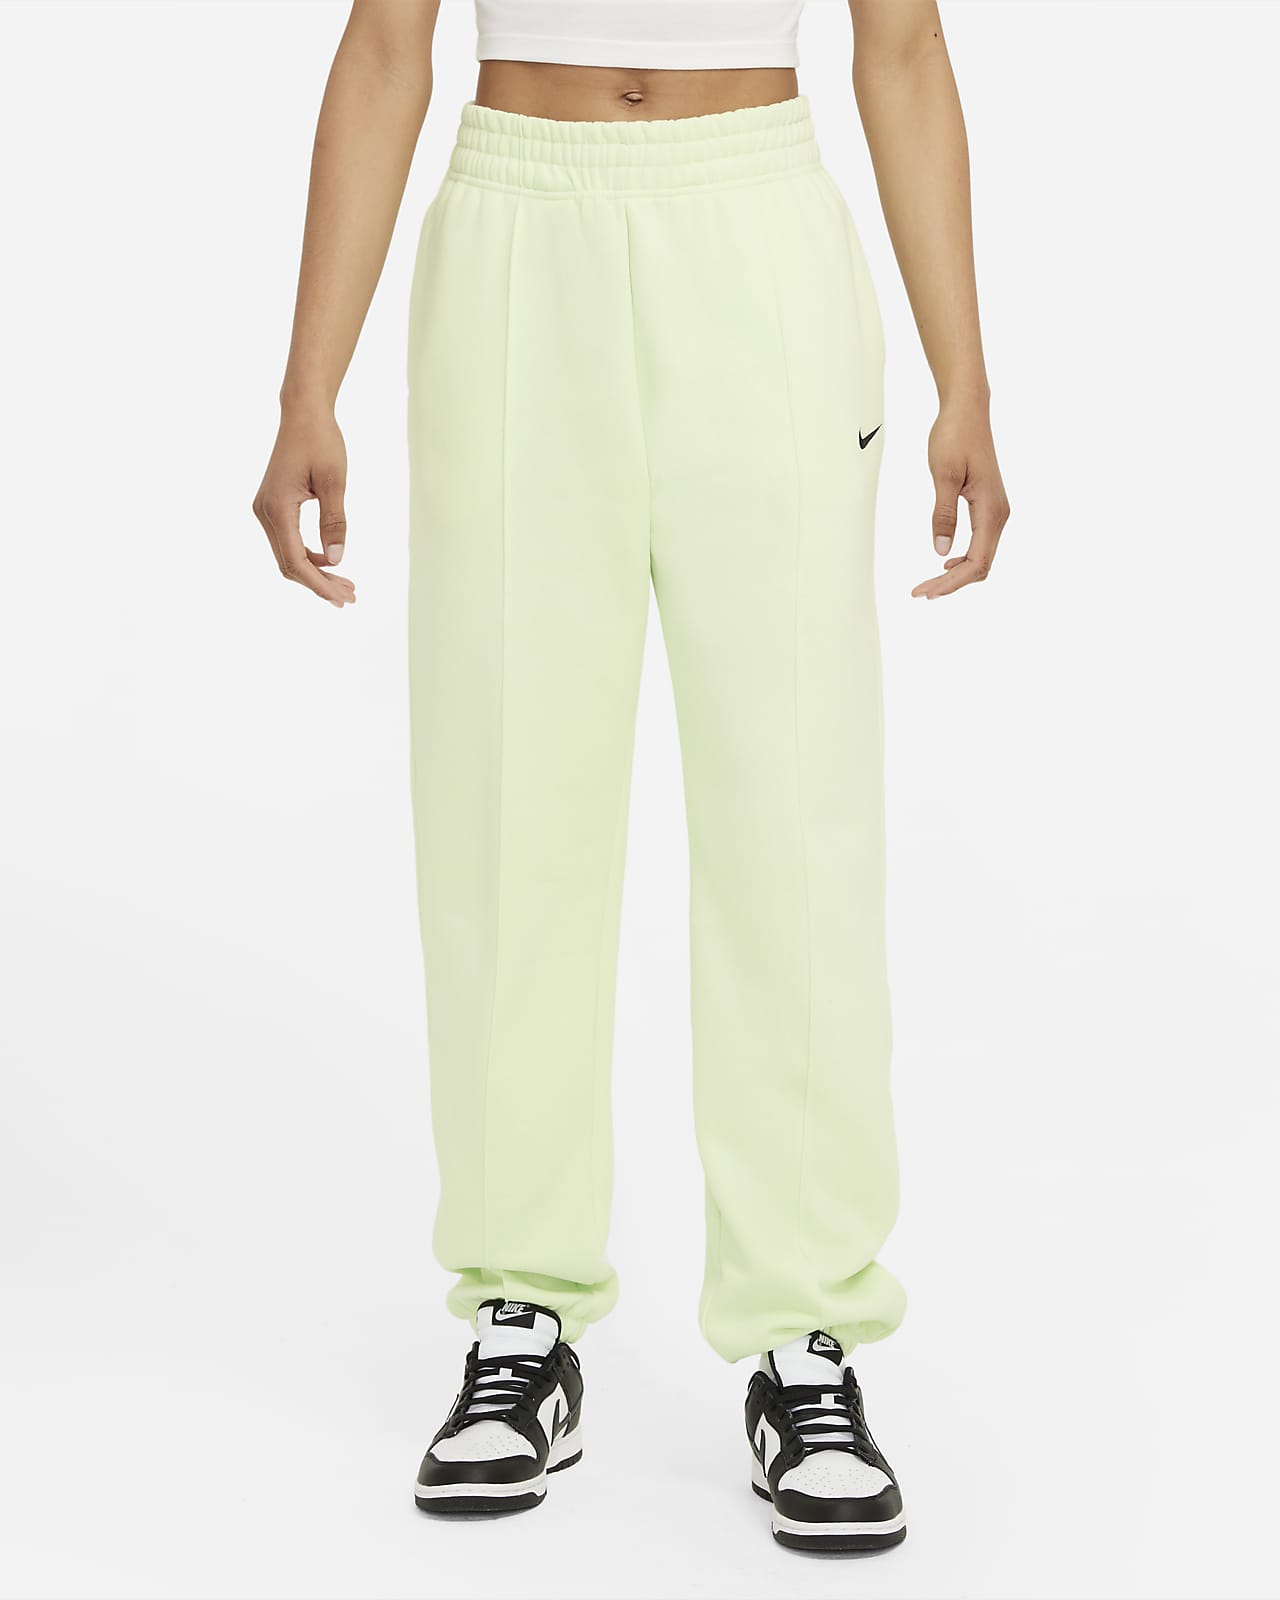 Nike Sportswear Essential Collection Women's Fleece Trousers